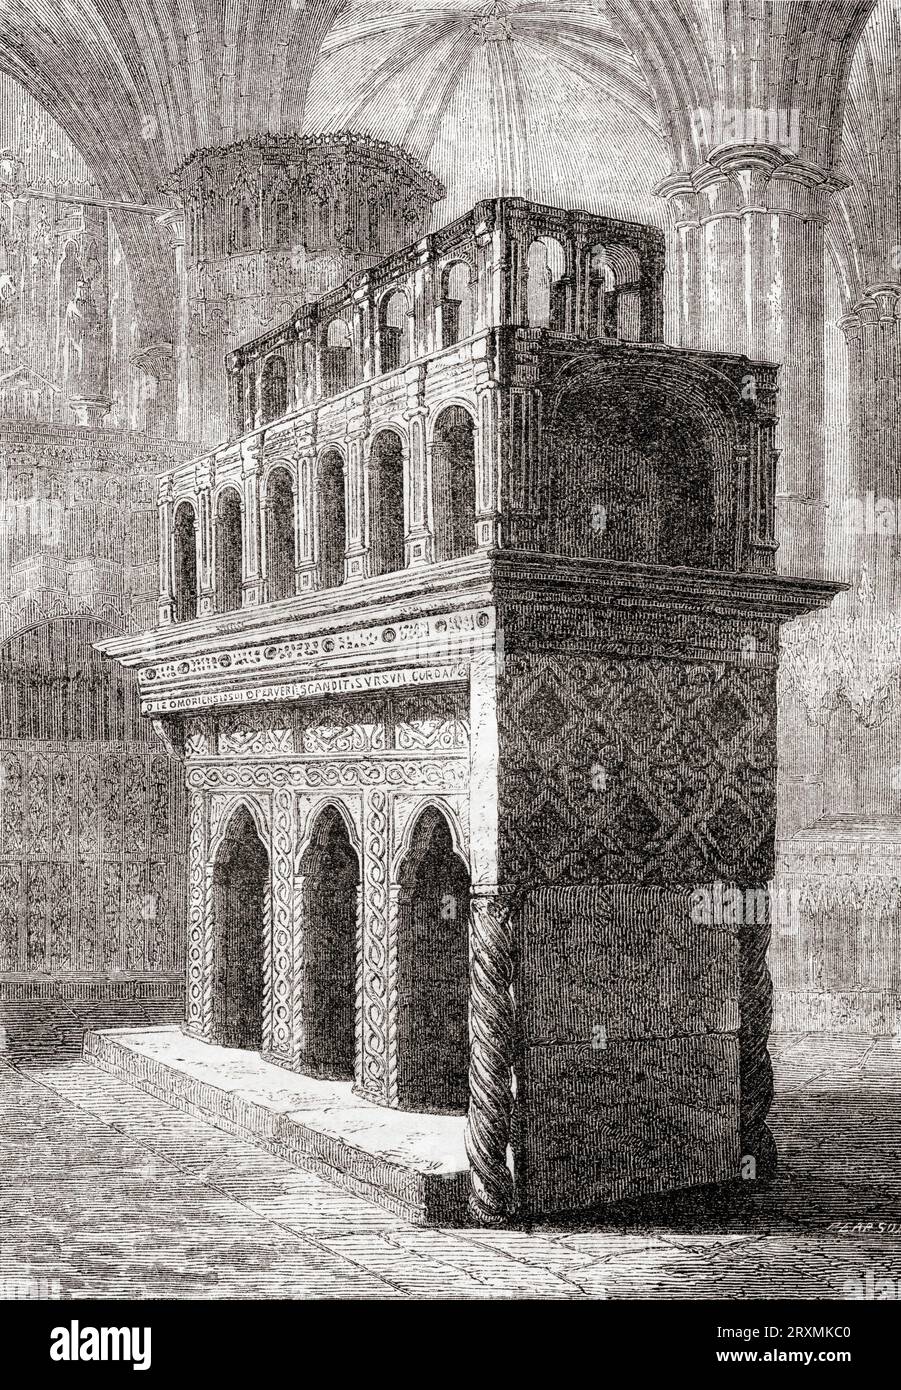 Der Schrein von König Eduard dem Bekenner, Westminster Abbey, London, England. Aus Cassell's Illustrated History of England, veröffentlicht 1857. Stockfoto